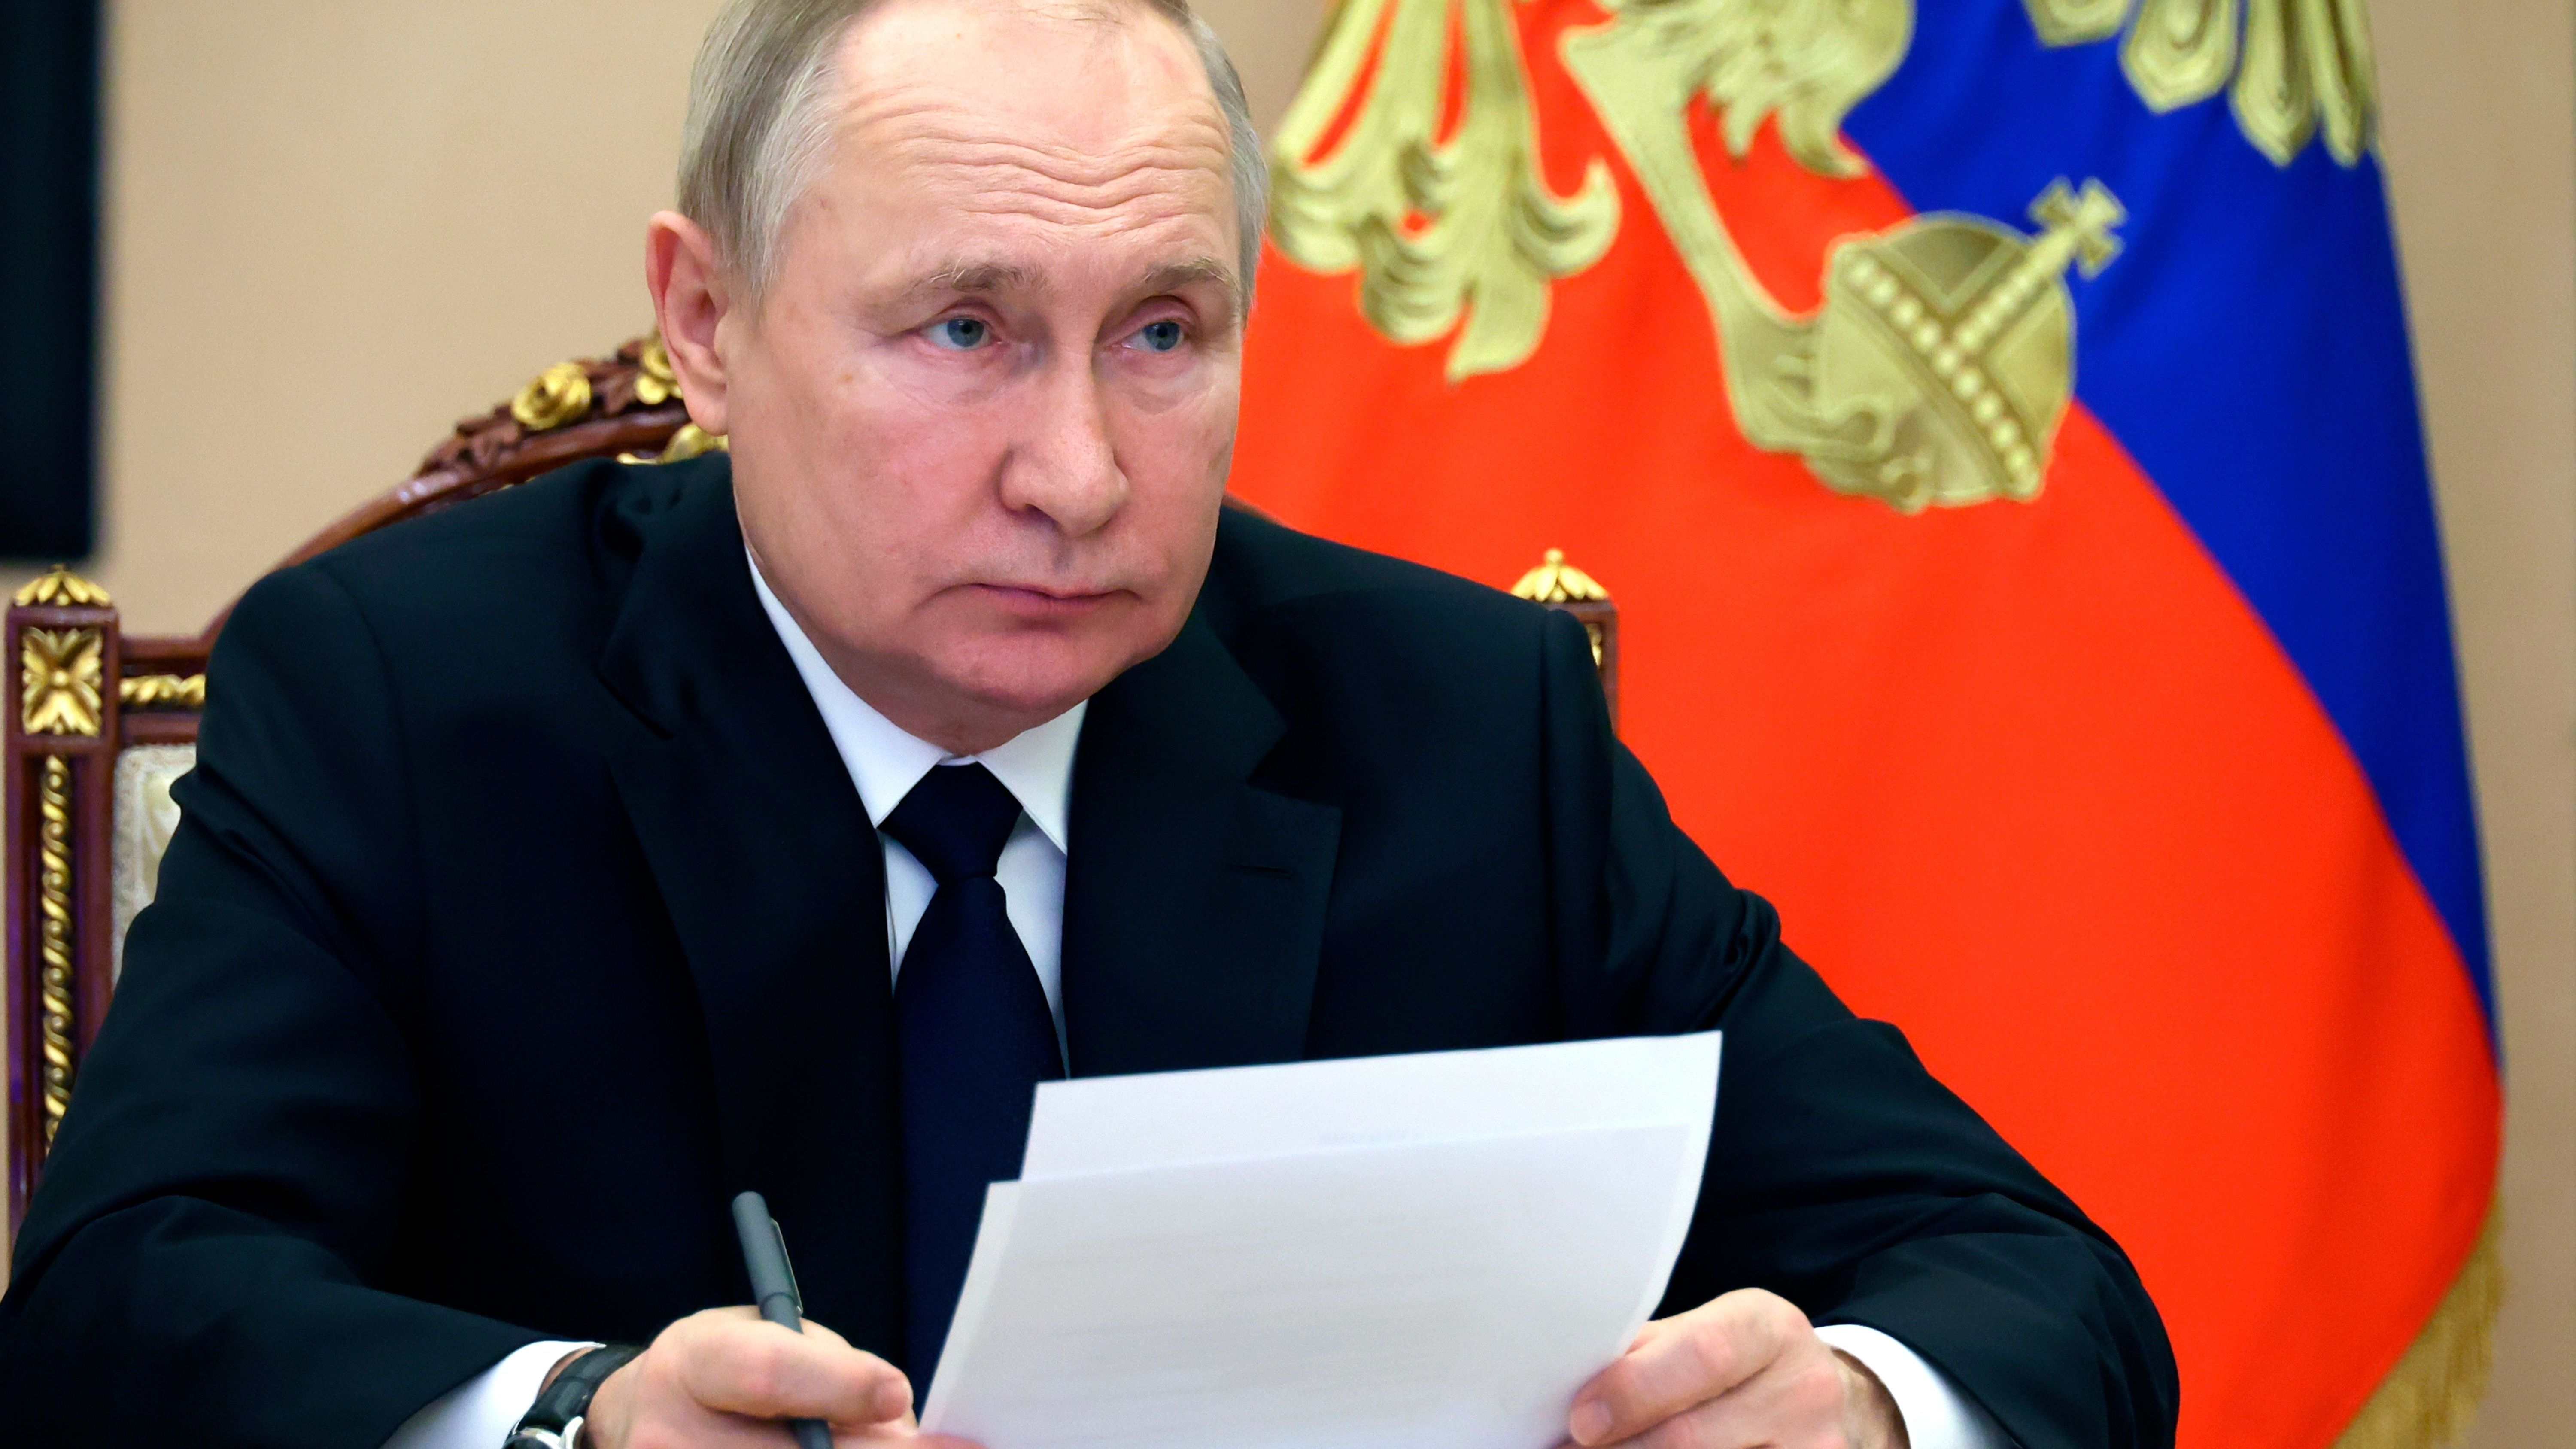 Der unabhängige Journalismus in Russland ist zusammengebrochen. Putin setzt auf Lehre des Informationskriegs.